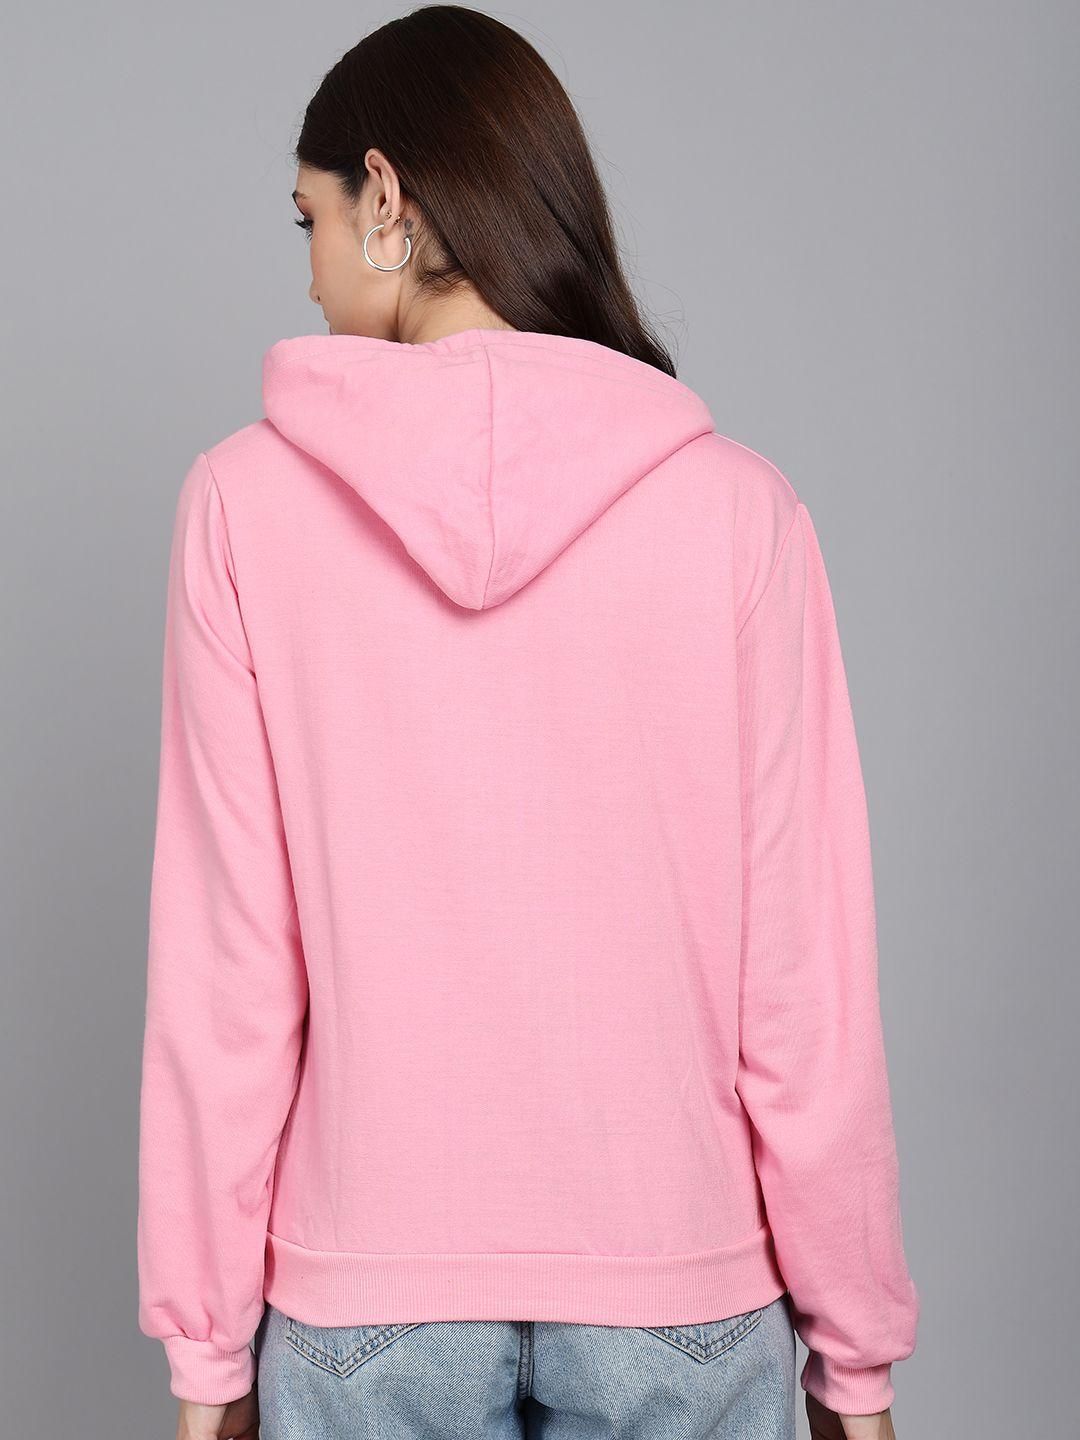 Women's Fleece Printed Full Sleeves Sweatshirts